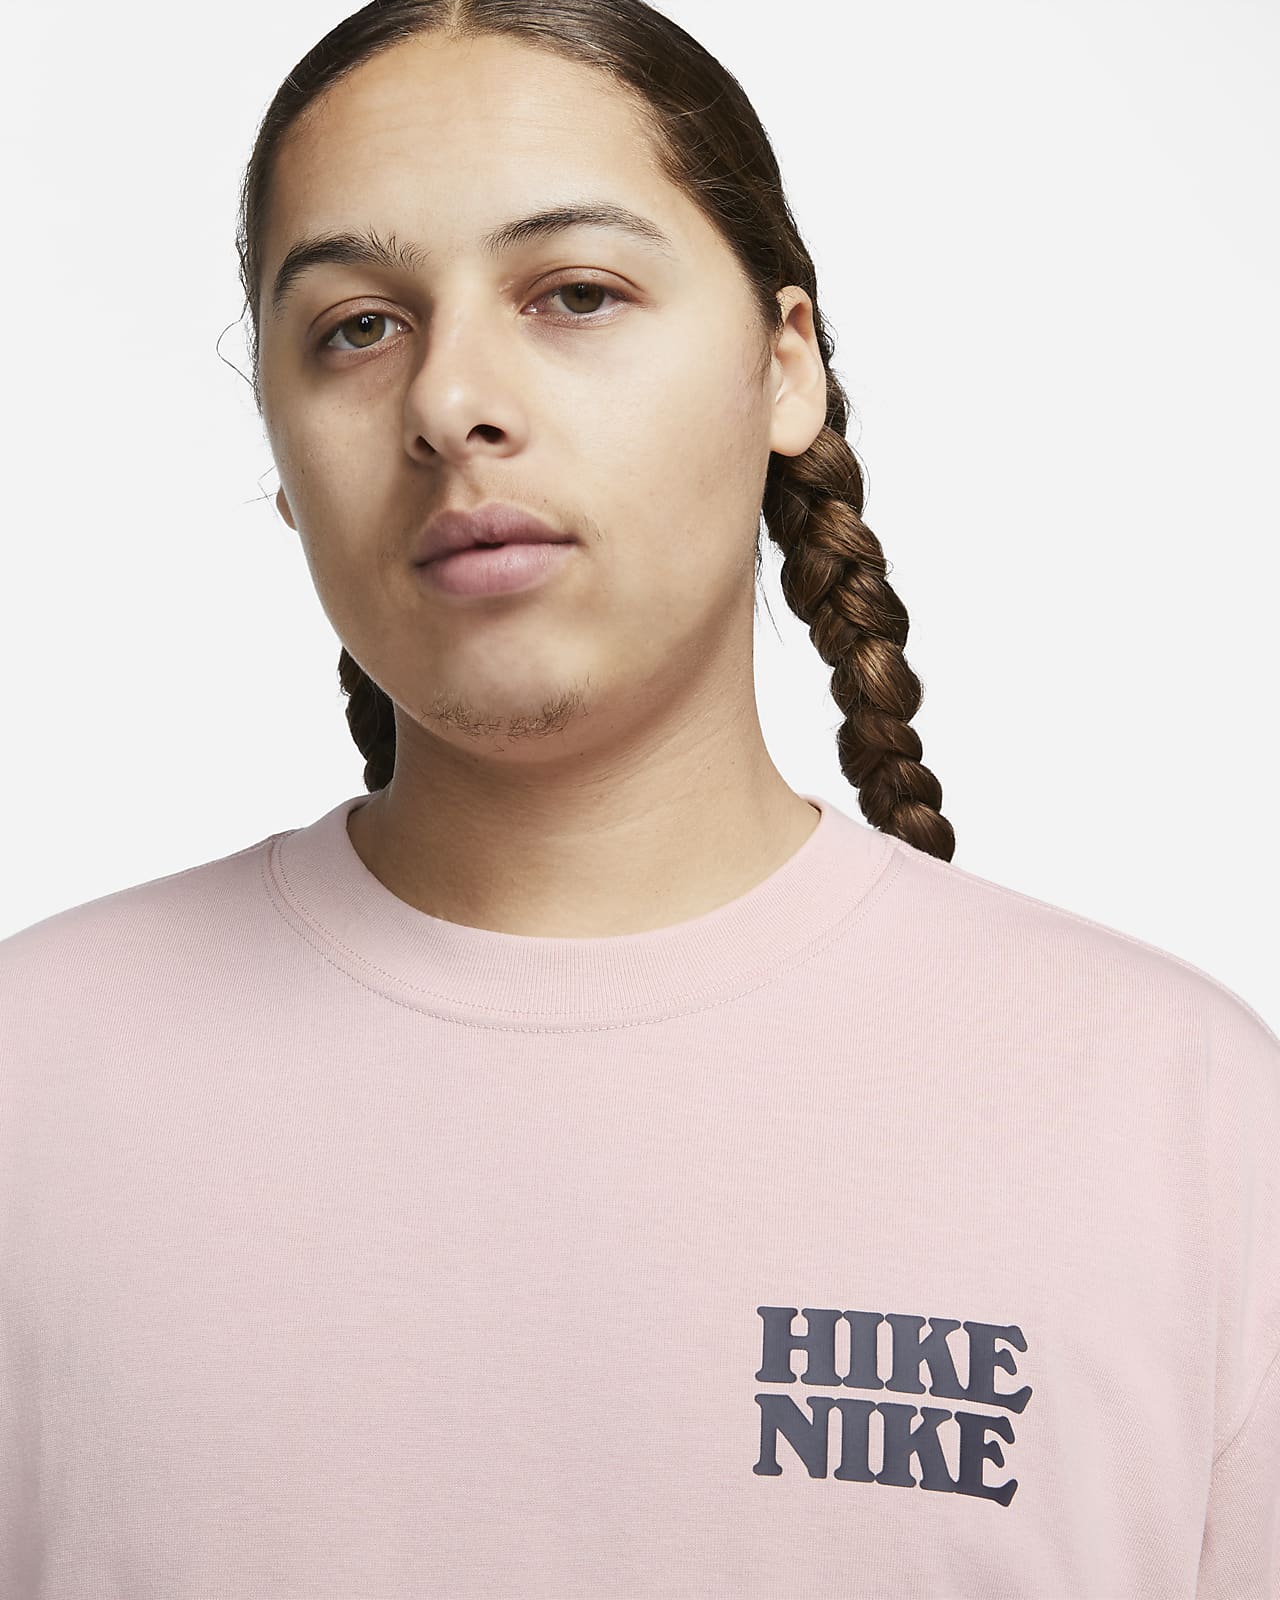 T-shirt Nike ACG för män. Nike SE